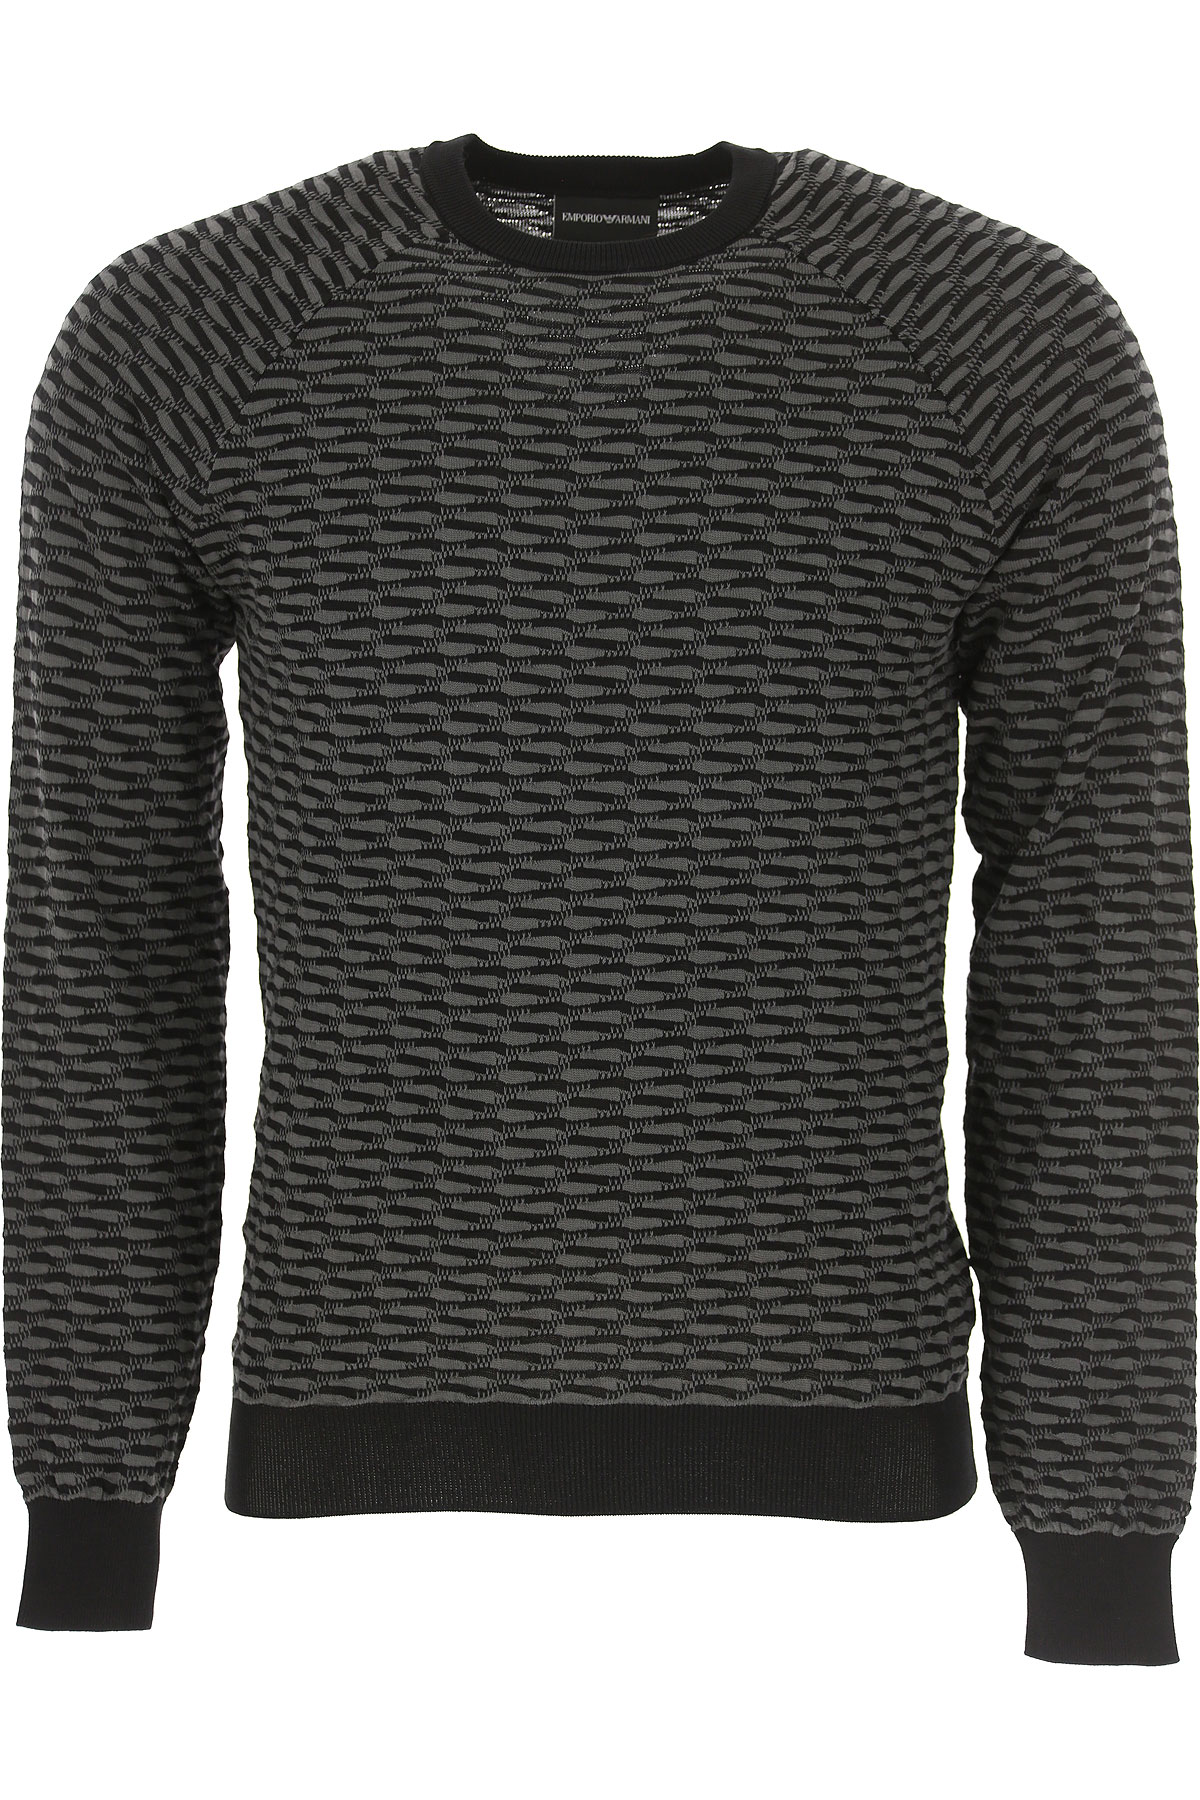 Emporio Armani Sweater For Men Jumper 